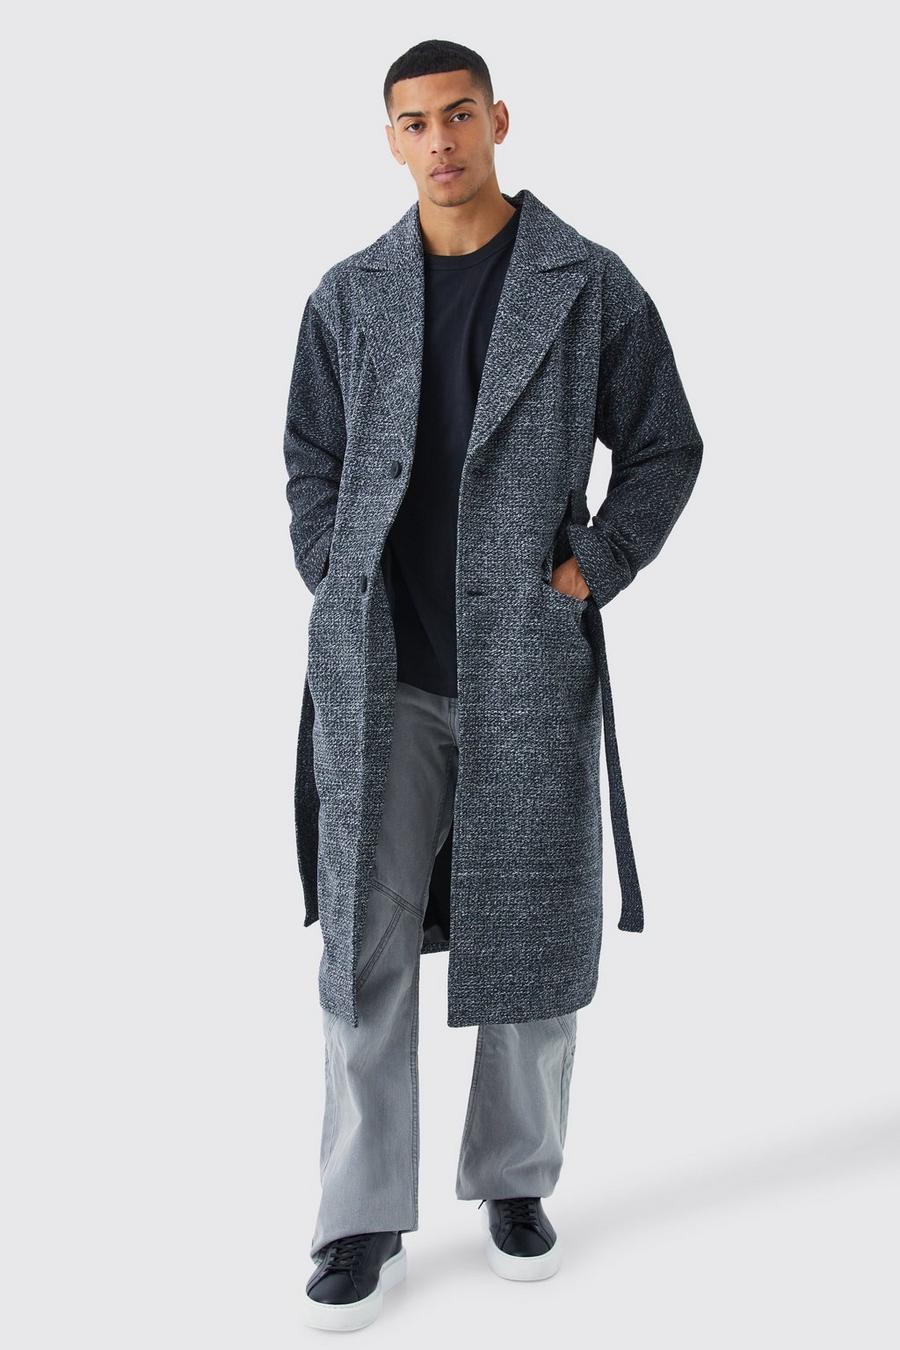 Schwarz-weißer Mantel mit Kontrast-Ärmeln und Gürtel, Grey